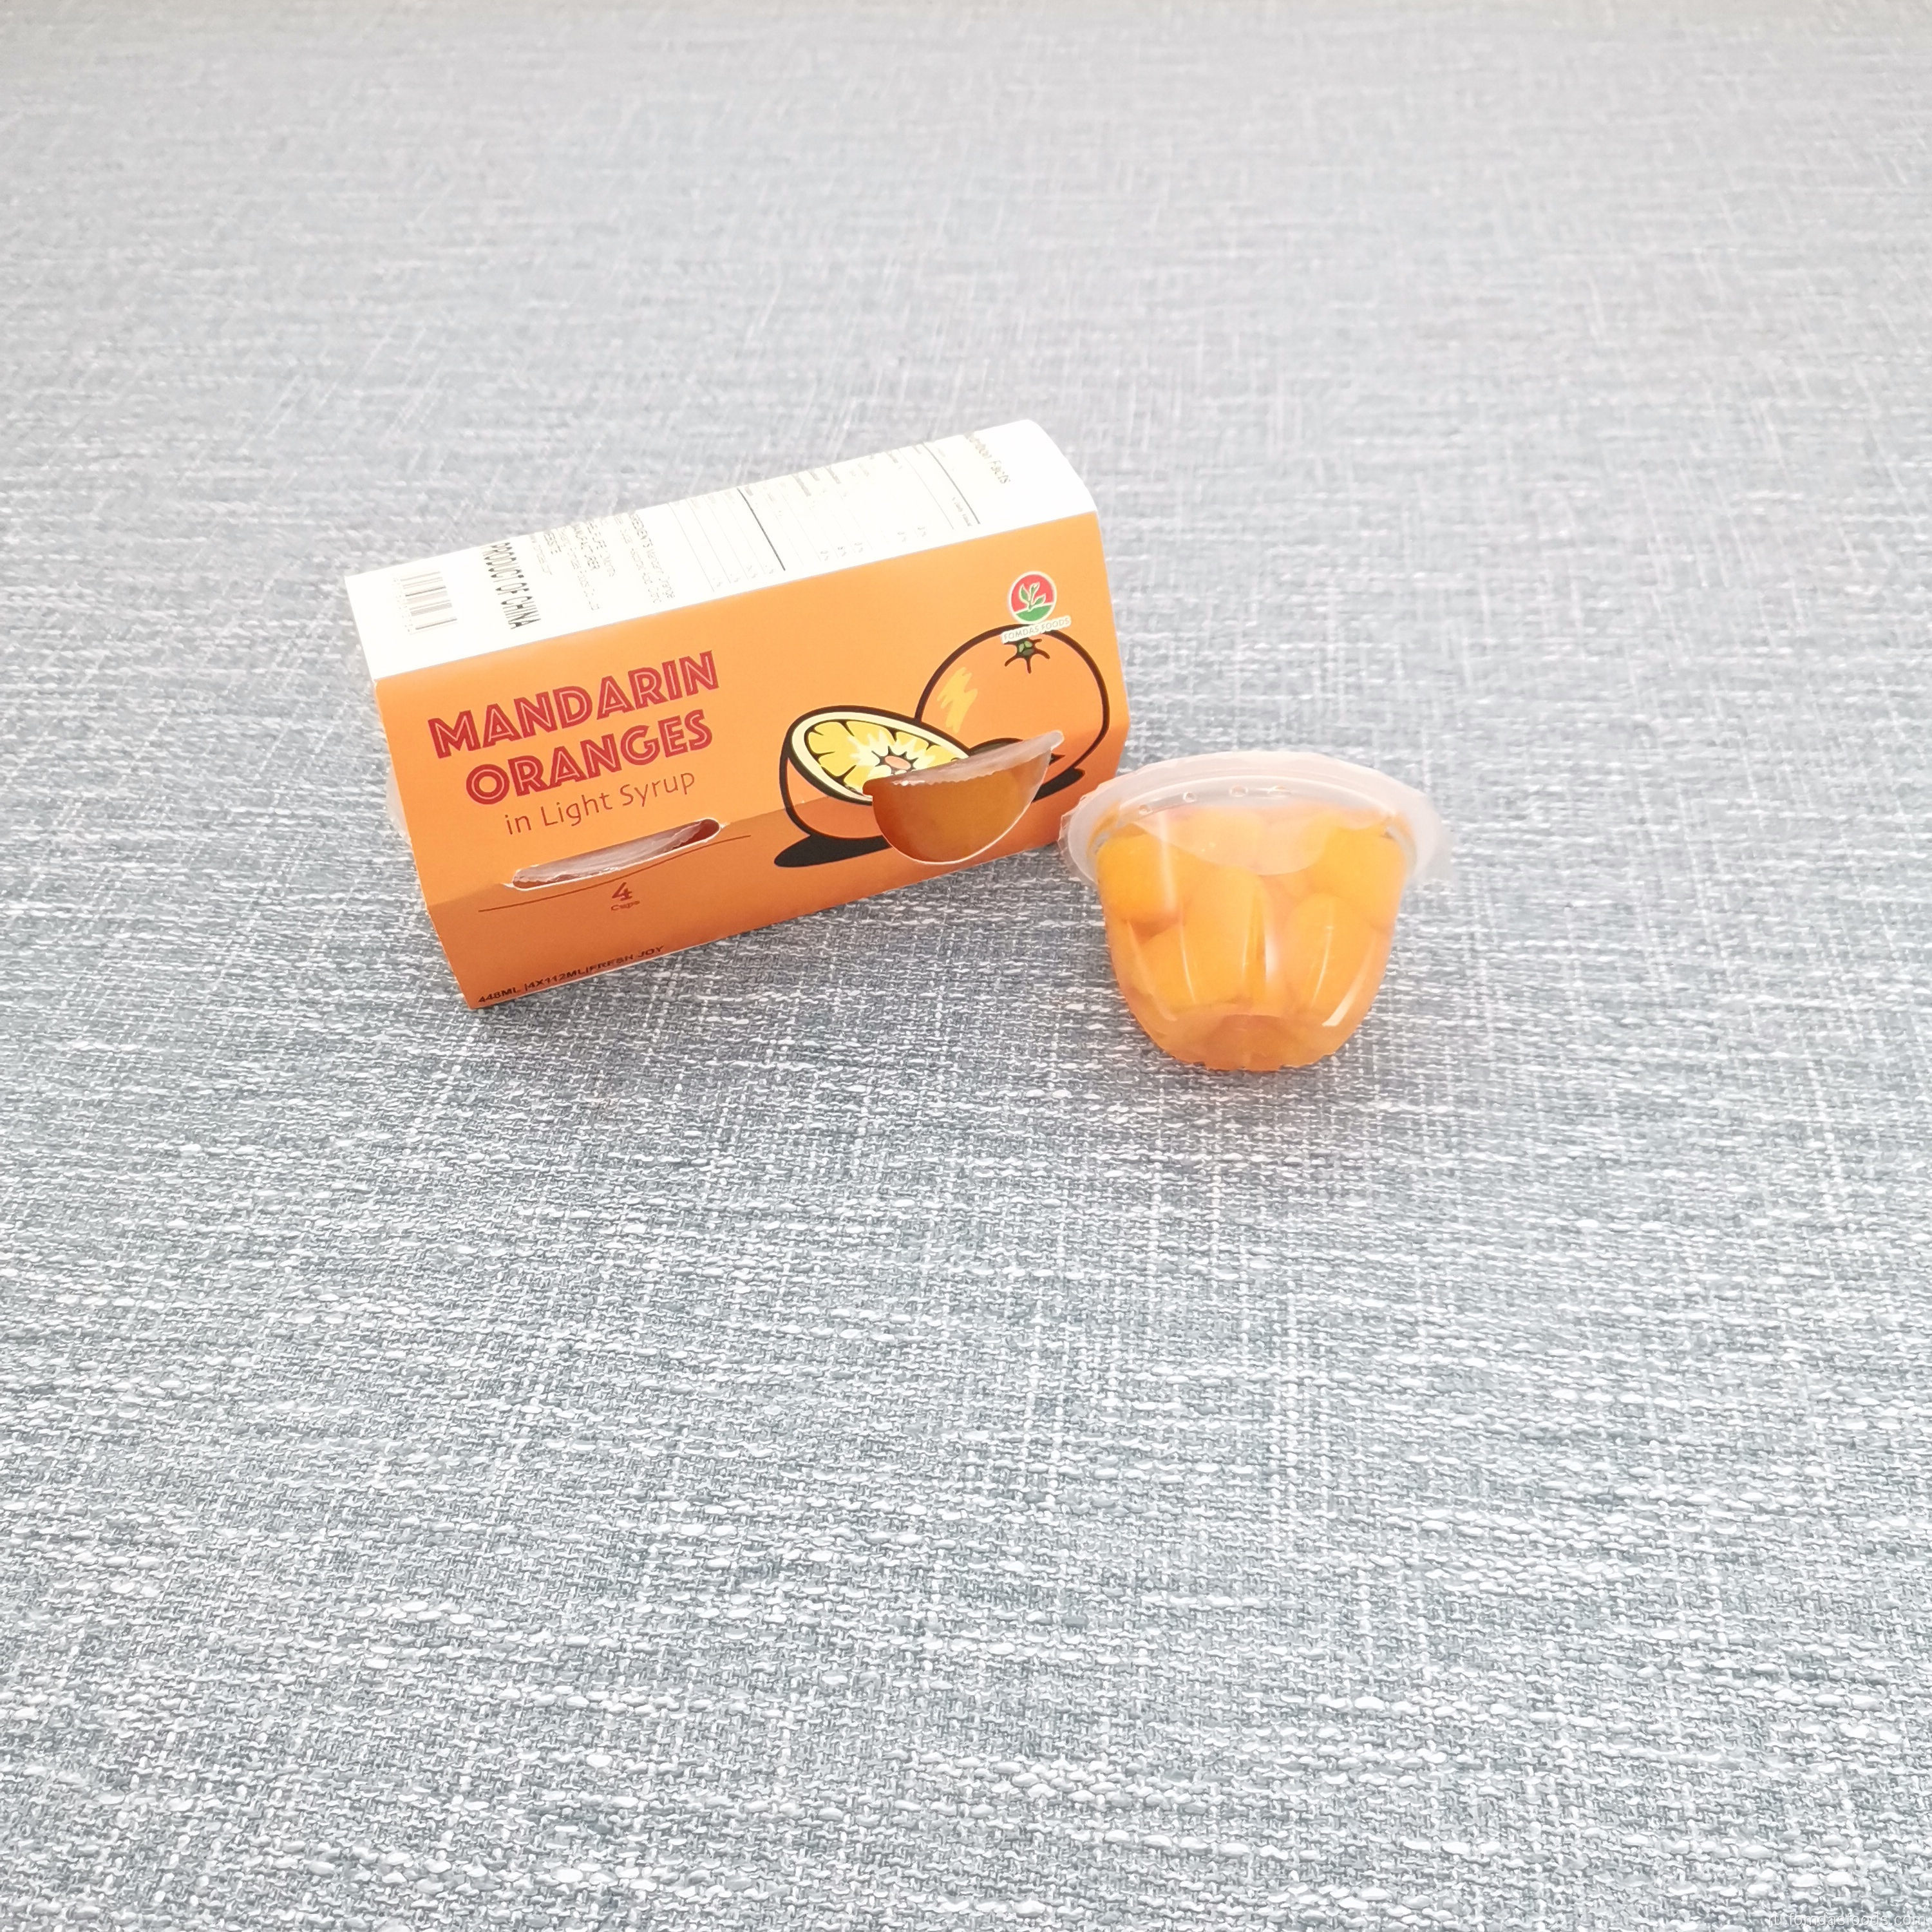 4 унции консервированного оранжевого сегмента в сиропе для больницы